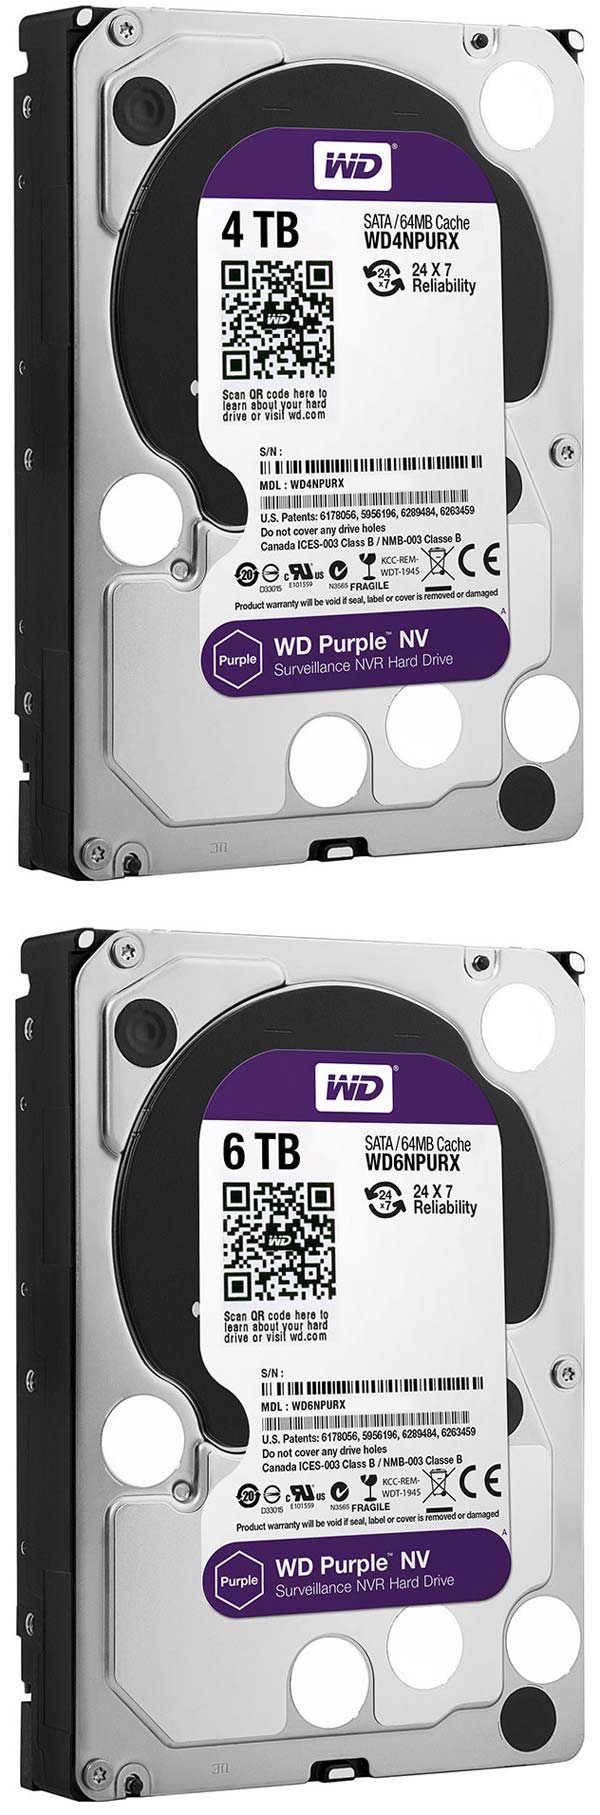 Новая серия винчестеров WD Purple NV